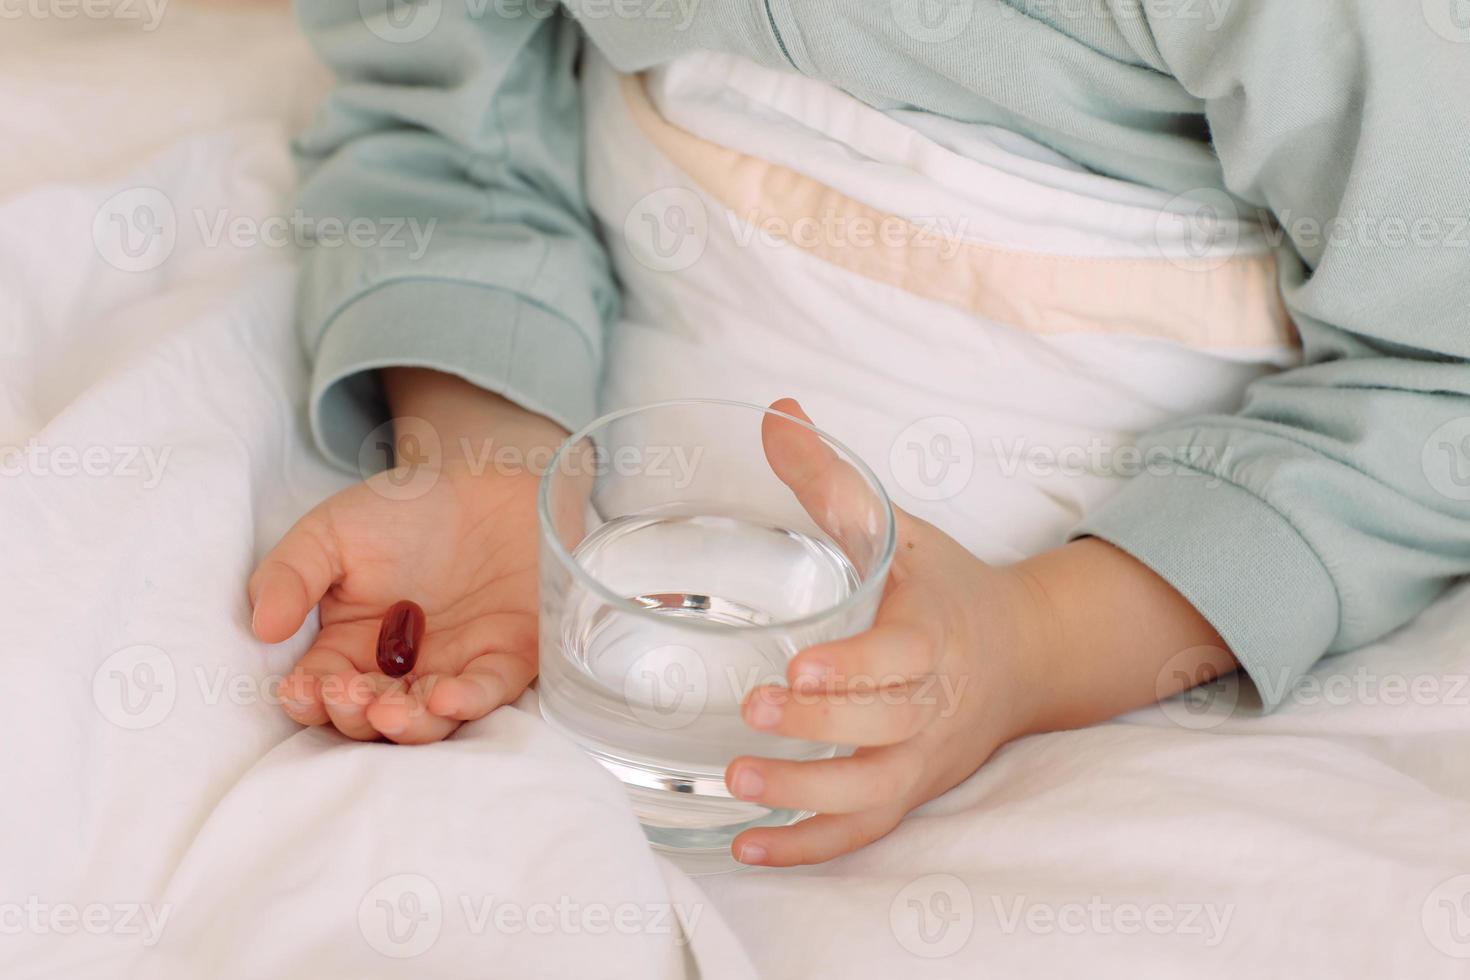 cerrar las manos el niño en la cama sostiene una pastilla y un vaso de agua tomando medicamentos, suplementos minerales vitamínicos, nutrición, atención médica, tratamiento foto